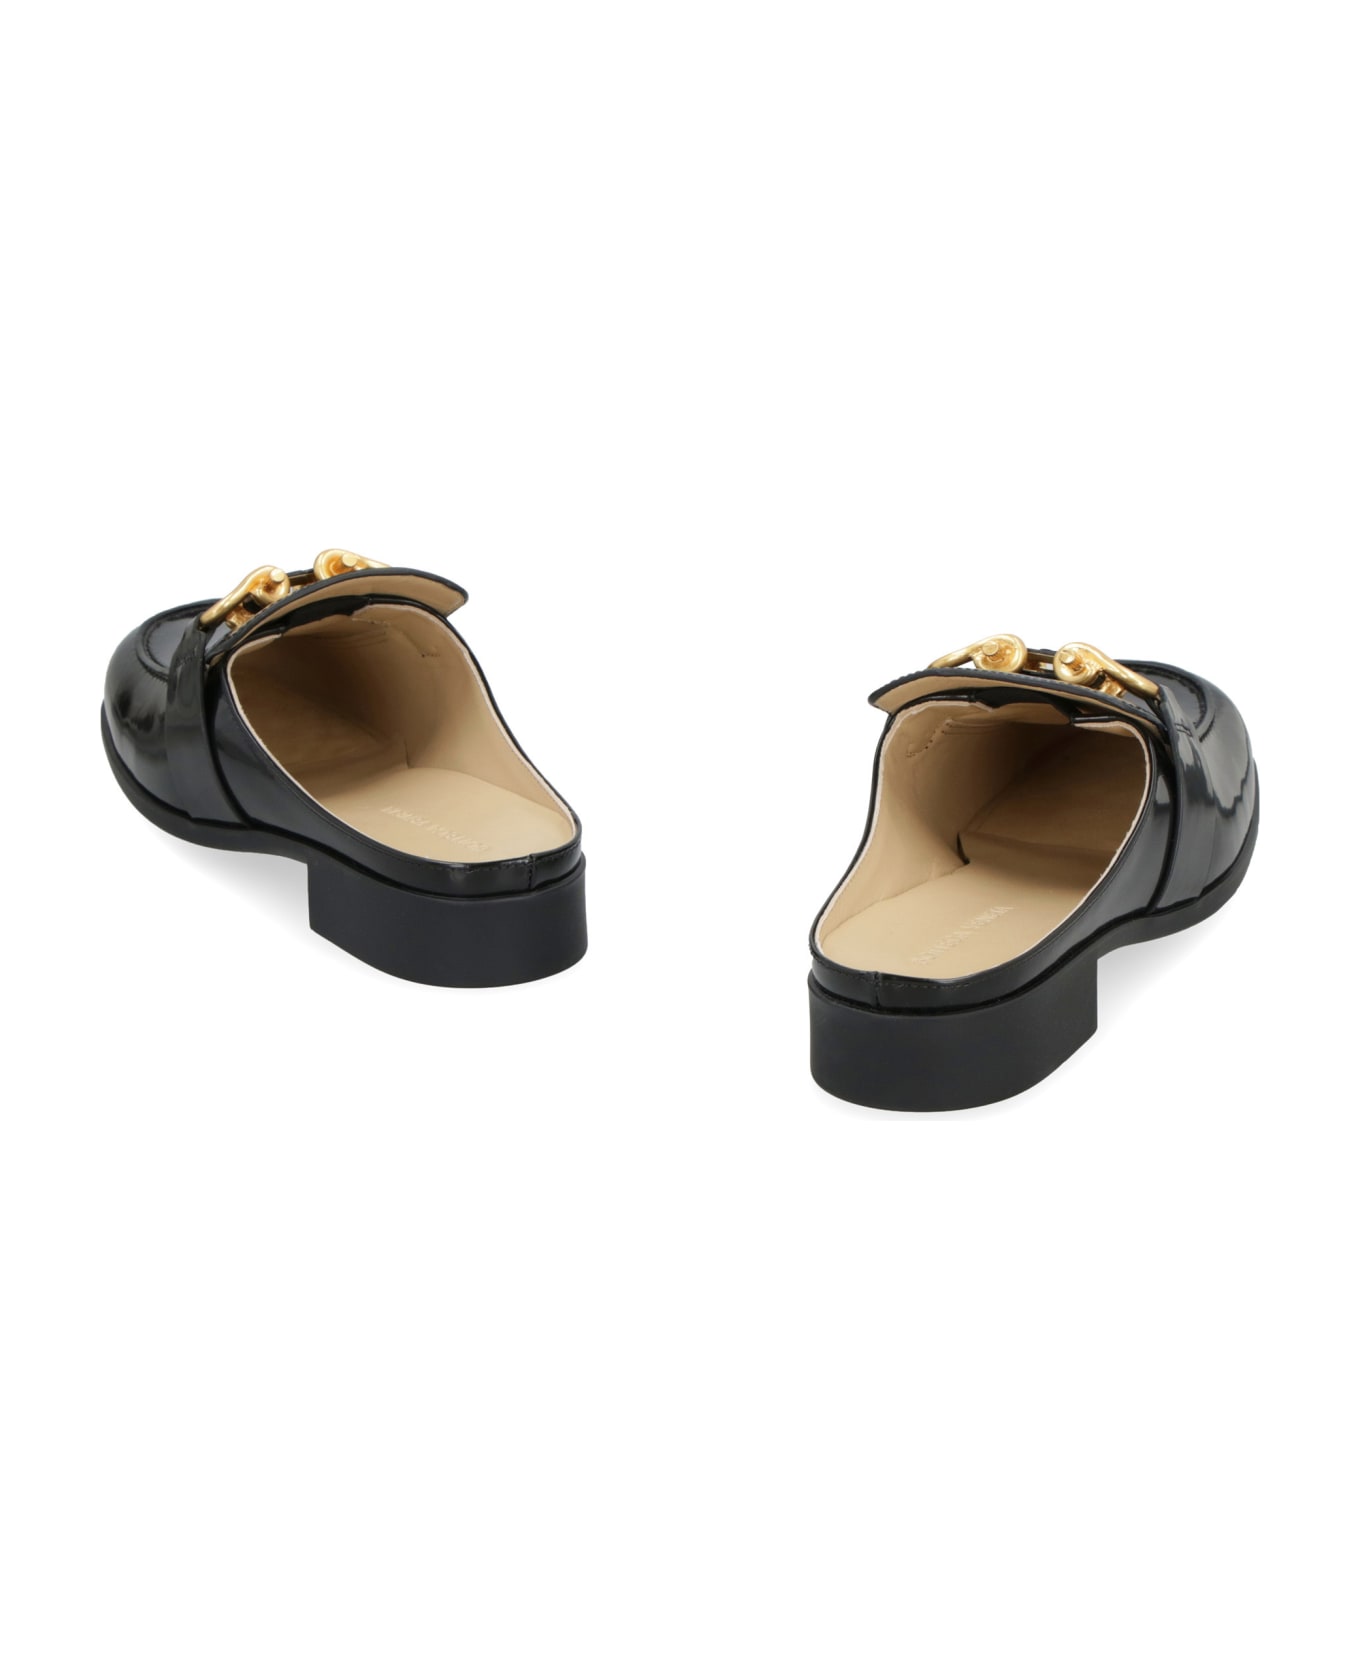 Bottega Veneta Monsieur Leather Loafers - black